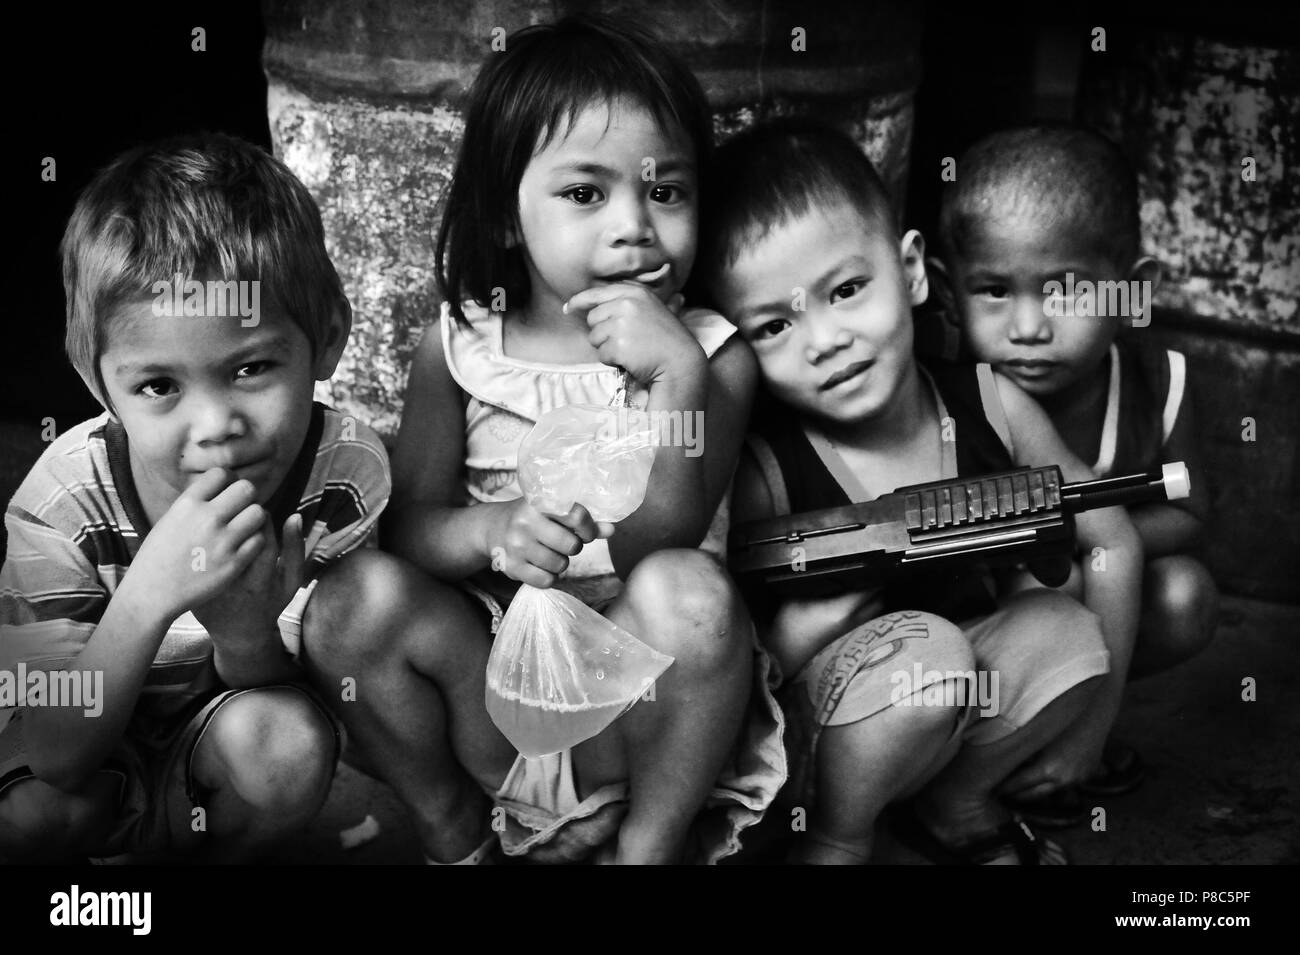 223 / German Doctors: ASIEN, PHILIPPINEN, CEBU, CEBU CITY, 11.02.2016: Kinder im Barangay Ermita Sports Center, die von den German Doctors in den Slum Stock Photo